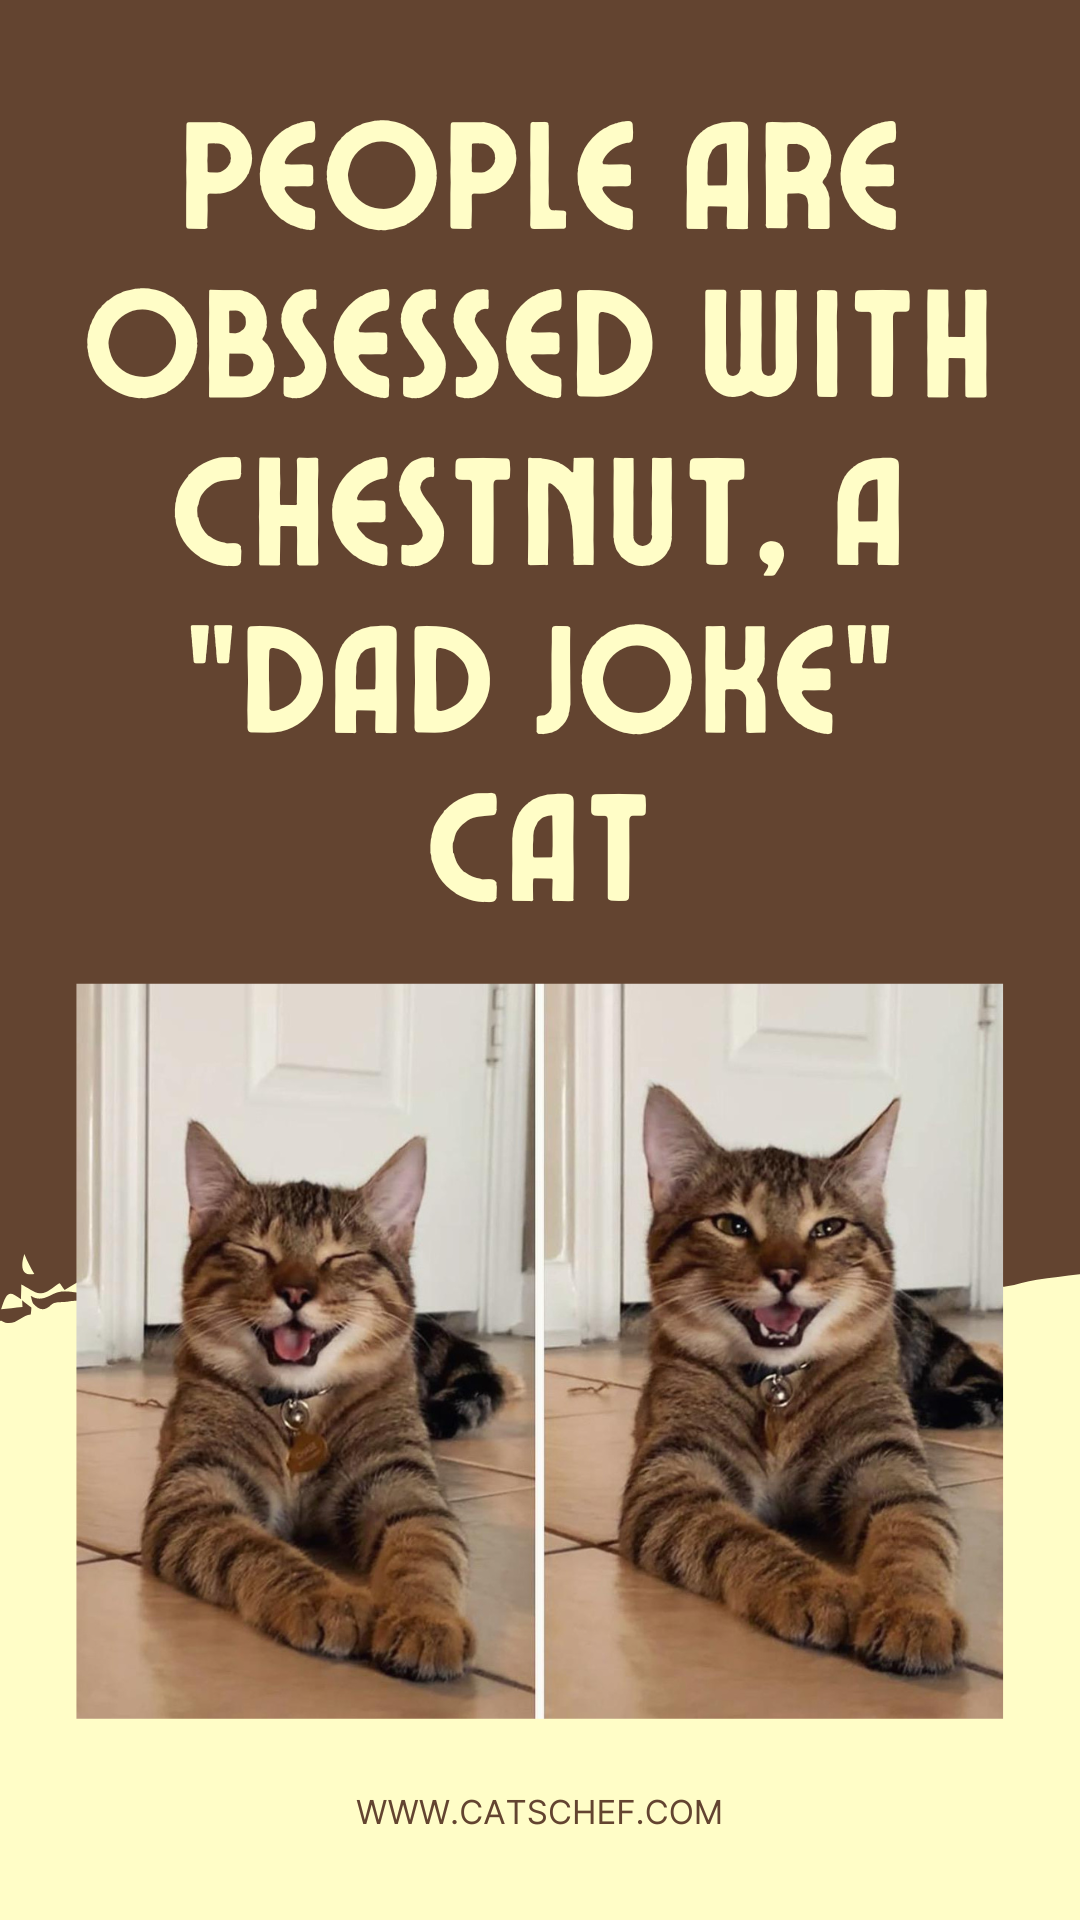 İnsanlar "Baba Şakası" Kedisi Chestnut'a Takmış Durumda